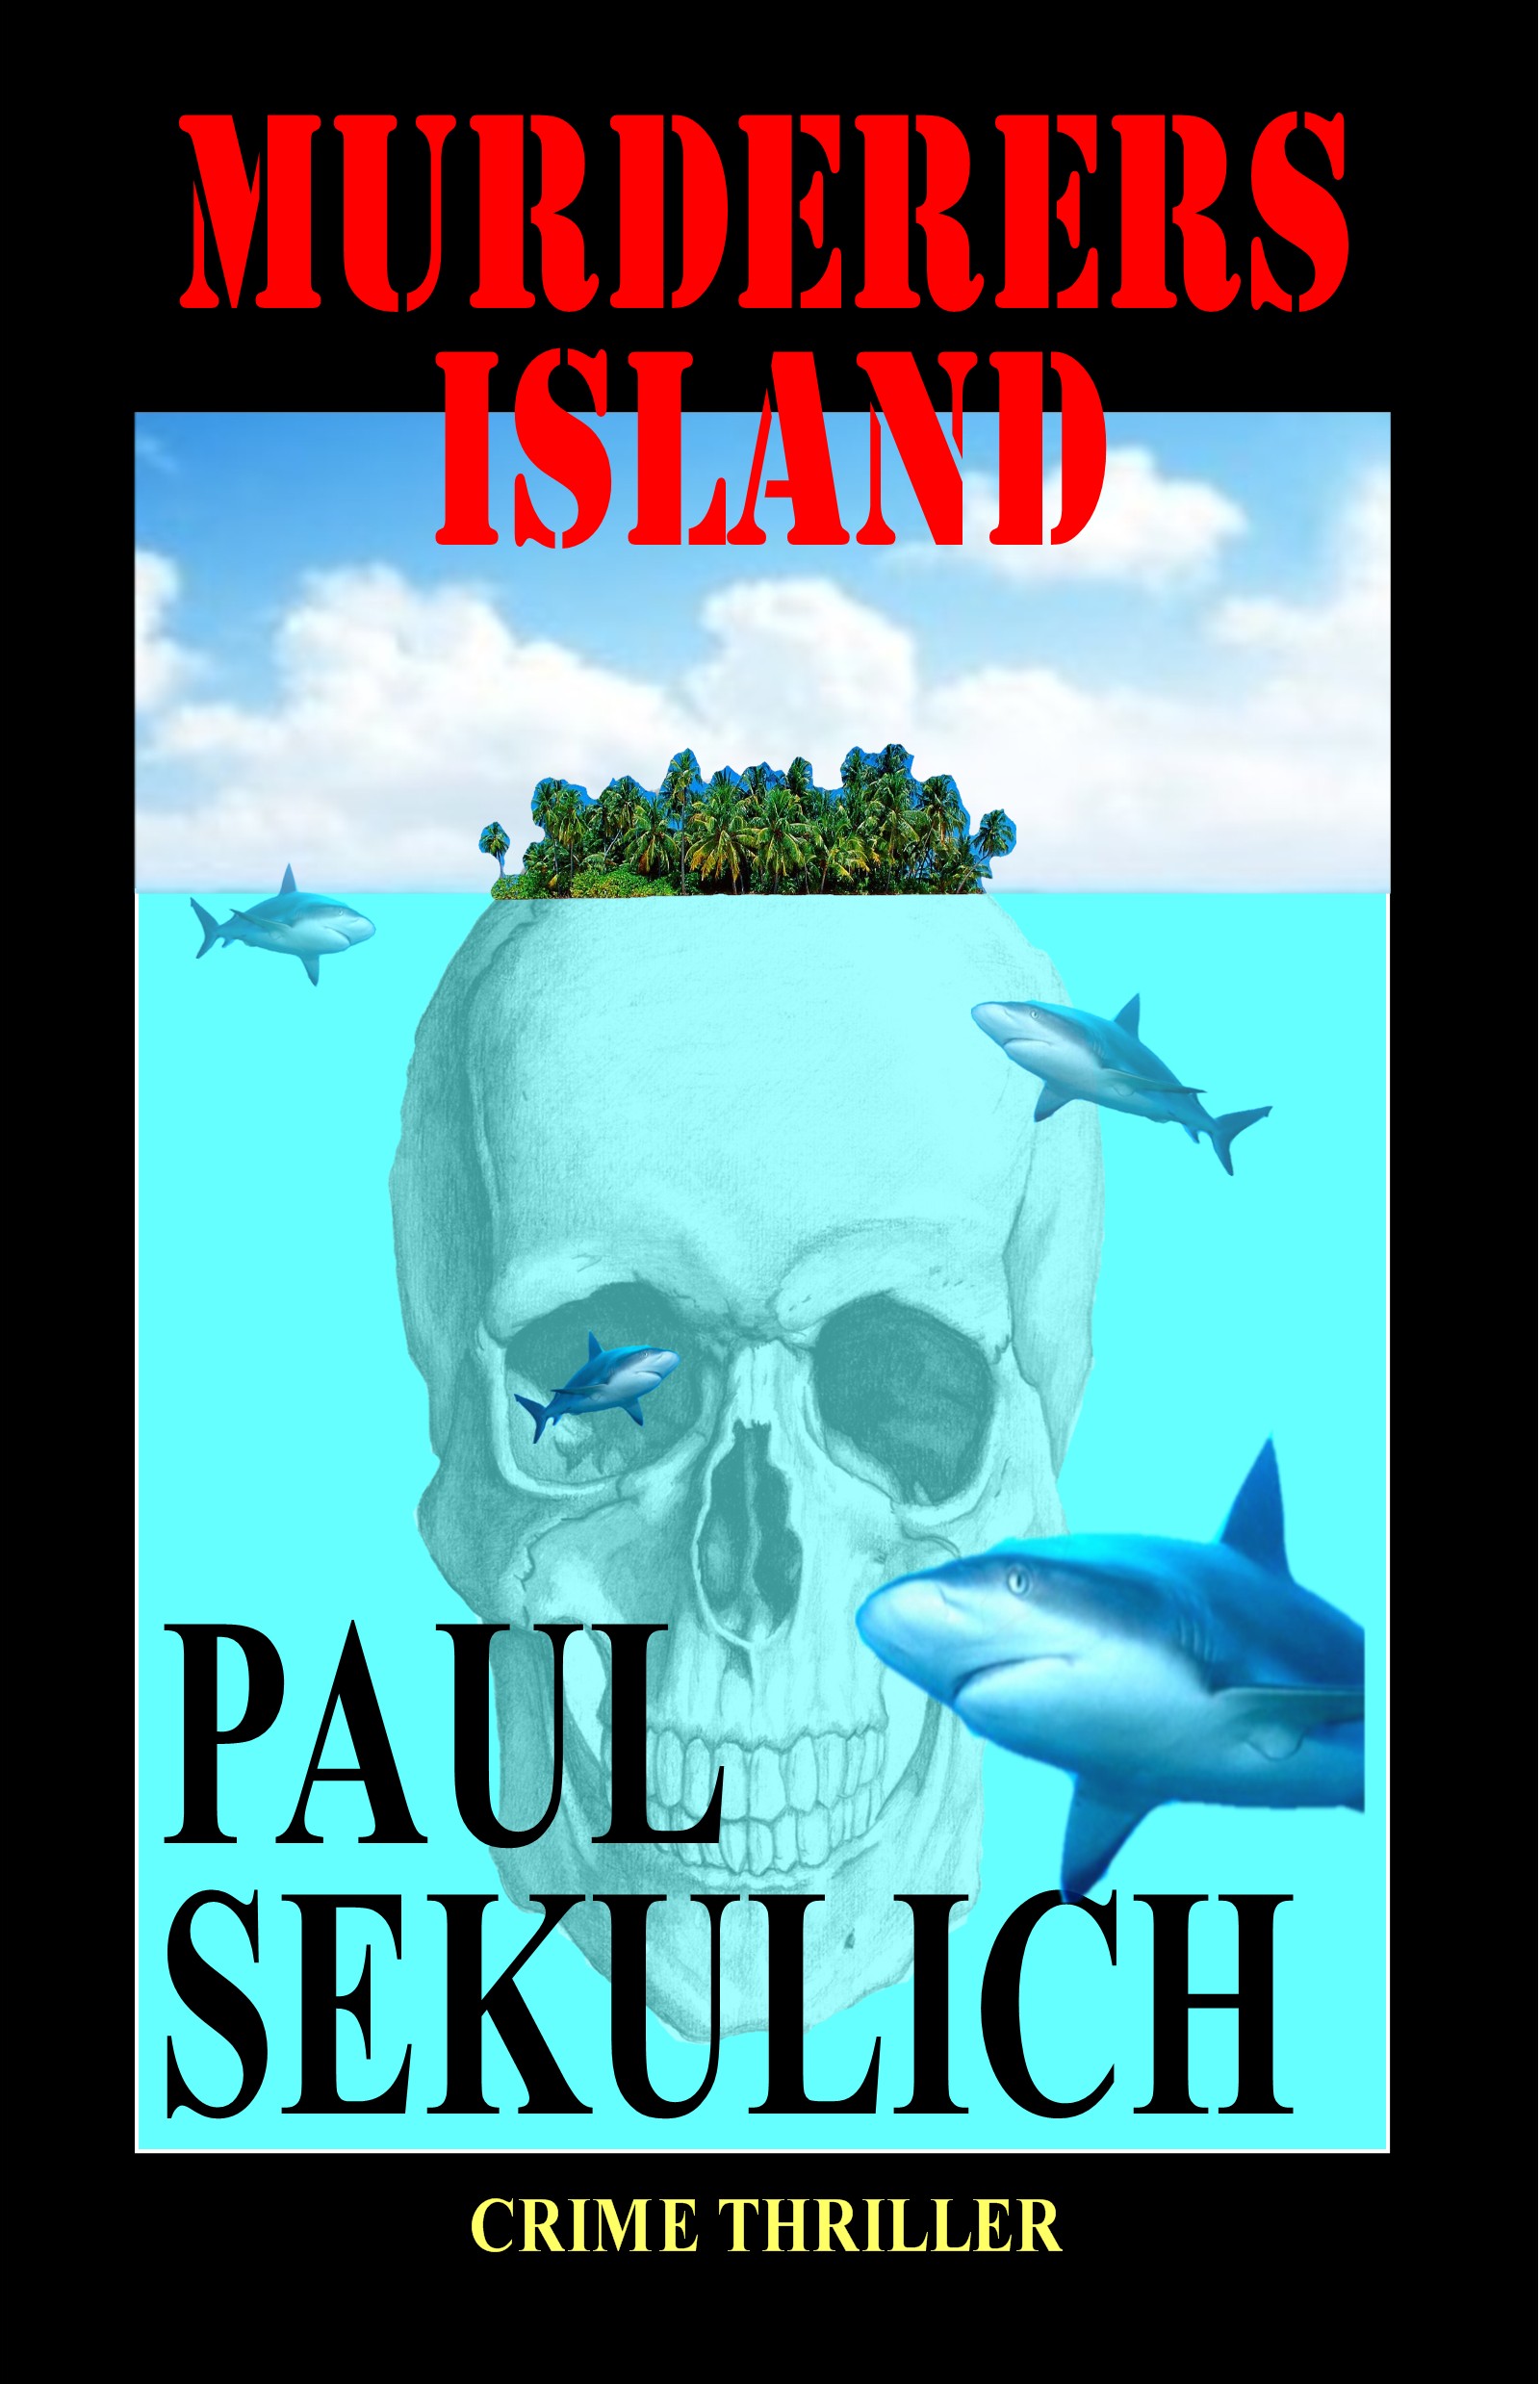 FREE: Murderers’ Island by Paul Sekulich